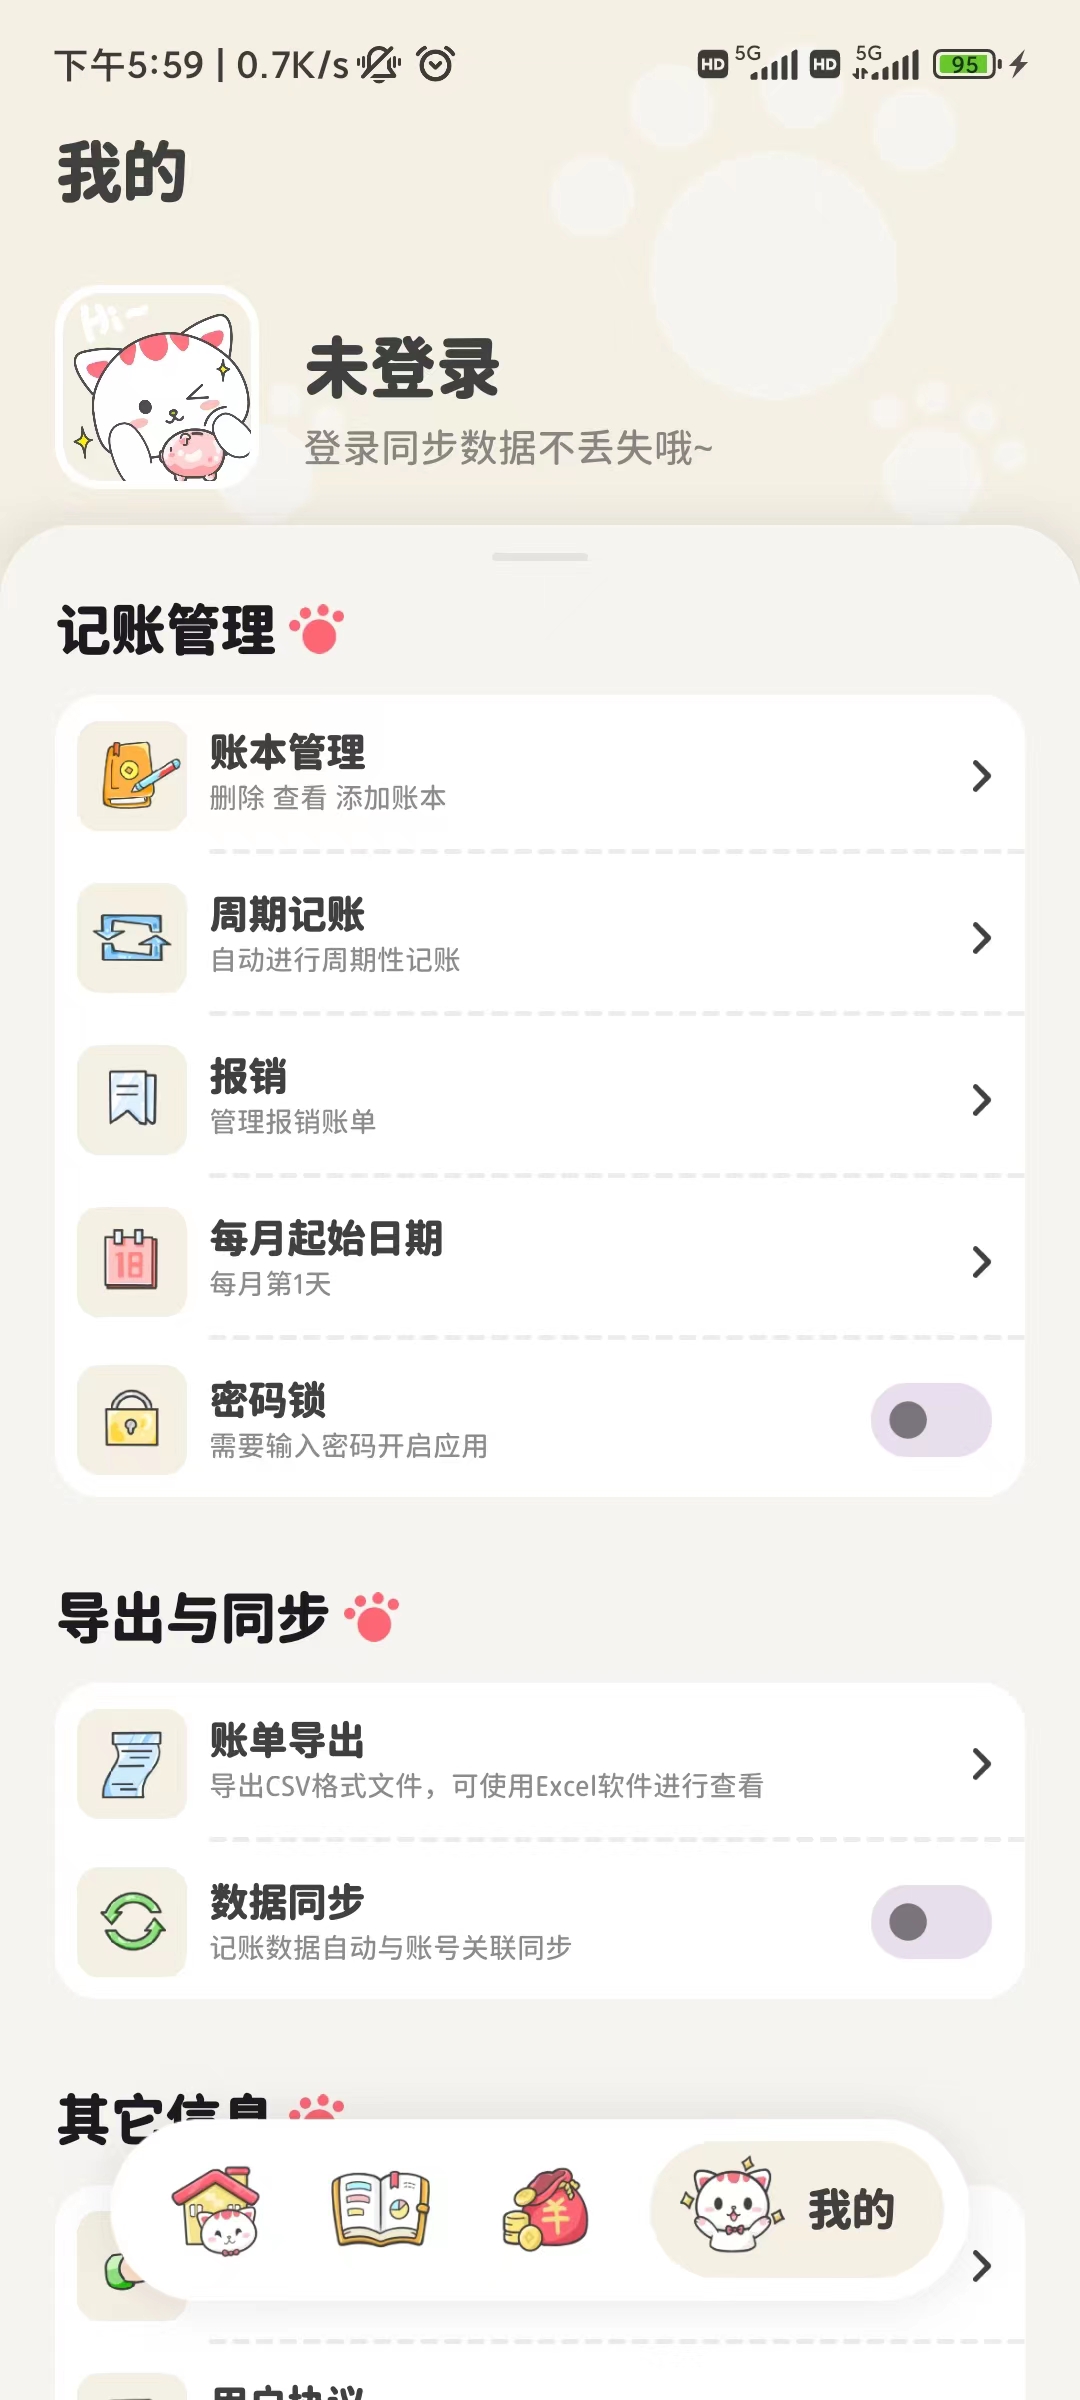 喵咕记账app下载,喵咕记账app官方版 v1.0.0